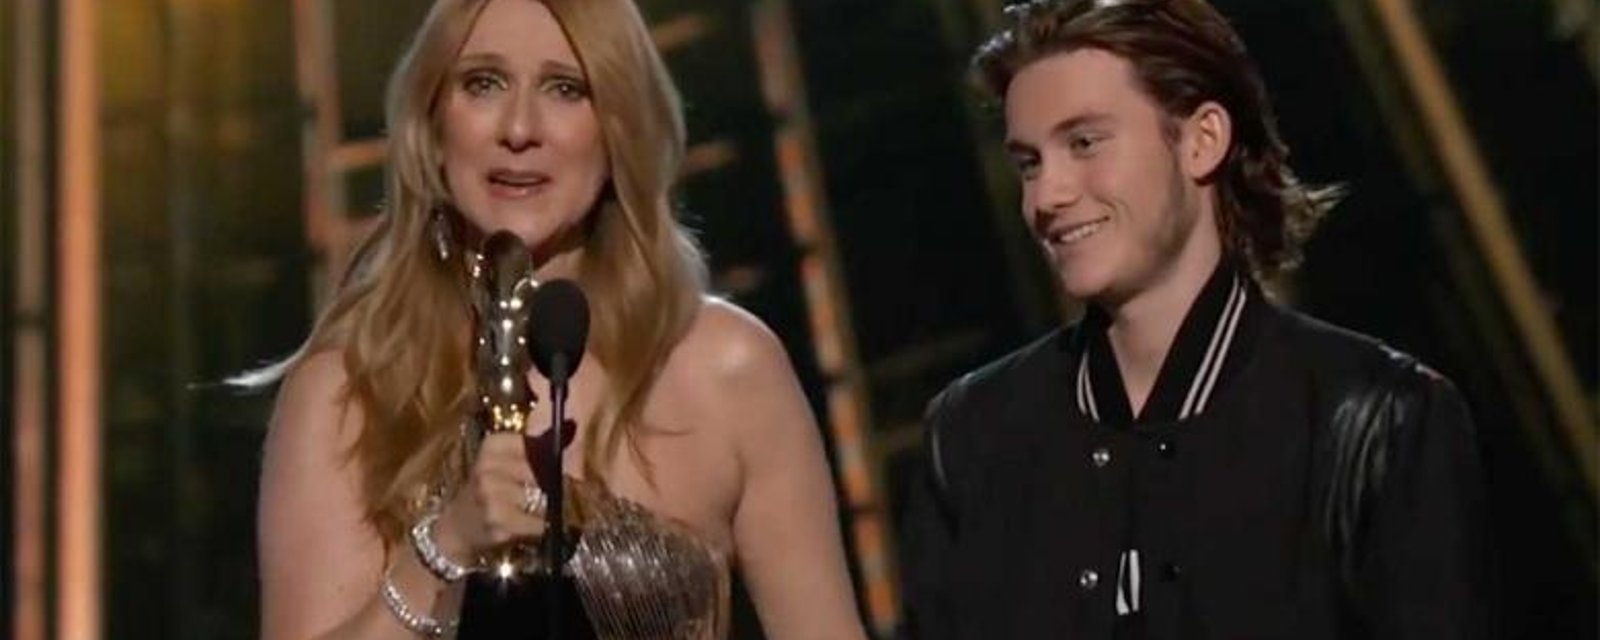 Surprise par son fils, Céline Dion fond en larmes dans ses bras!